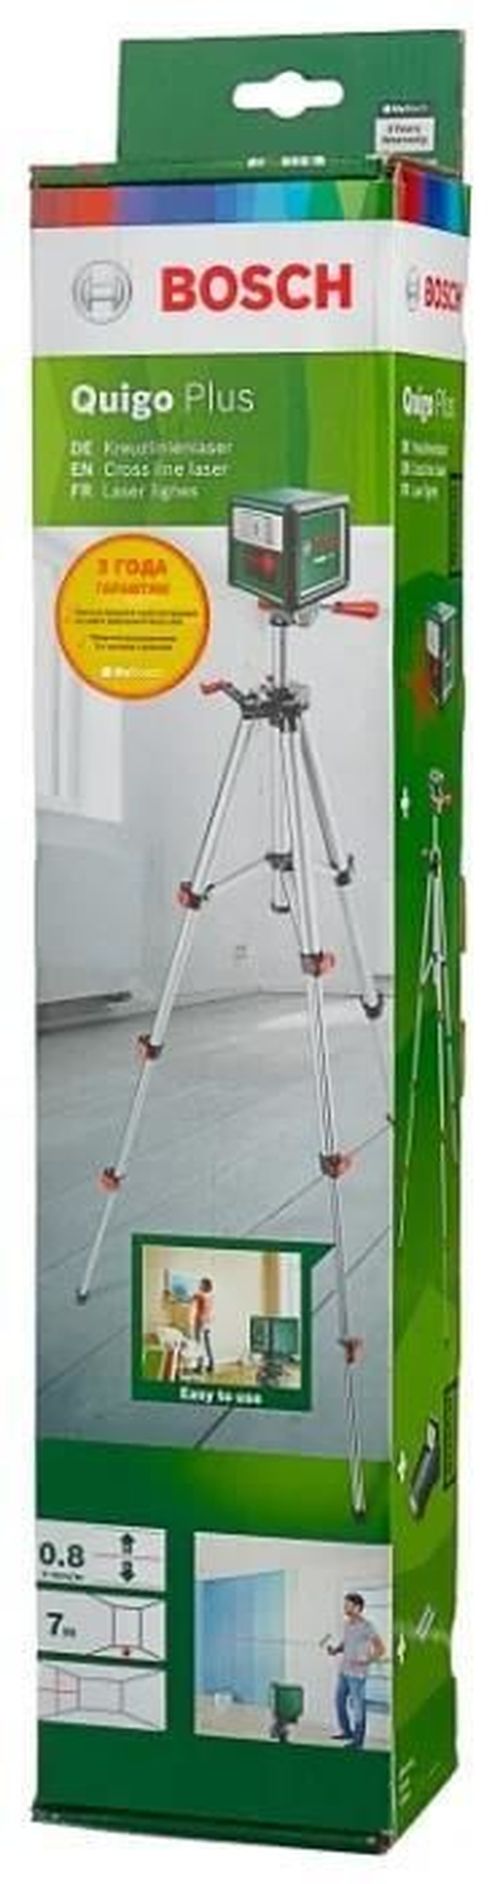 купить Измерительный прибор Bosch QUIGO PLUS 0603663600 в Кишинёве 